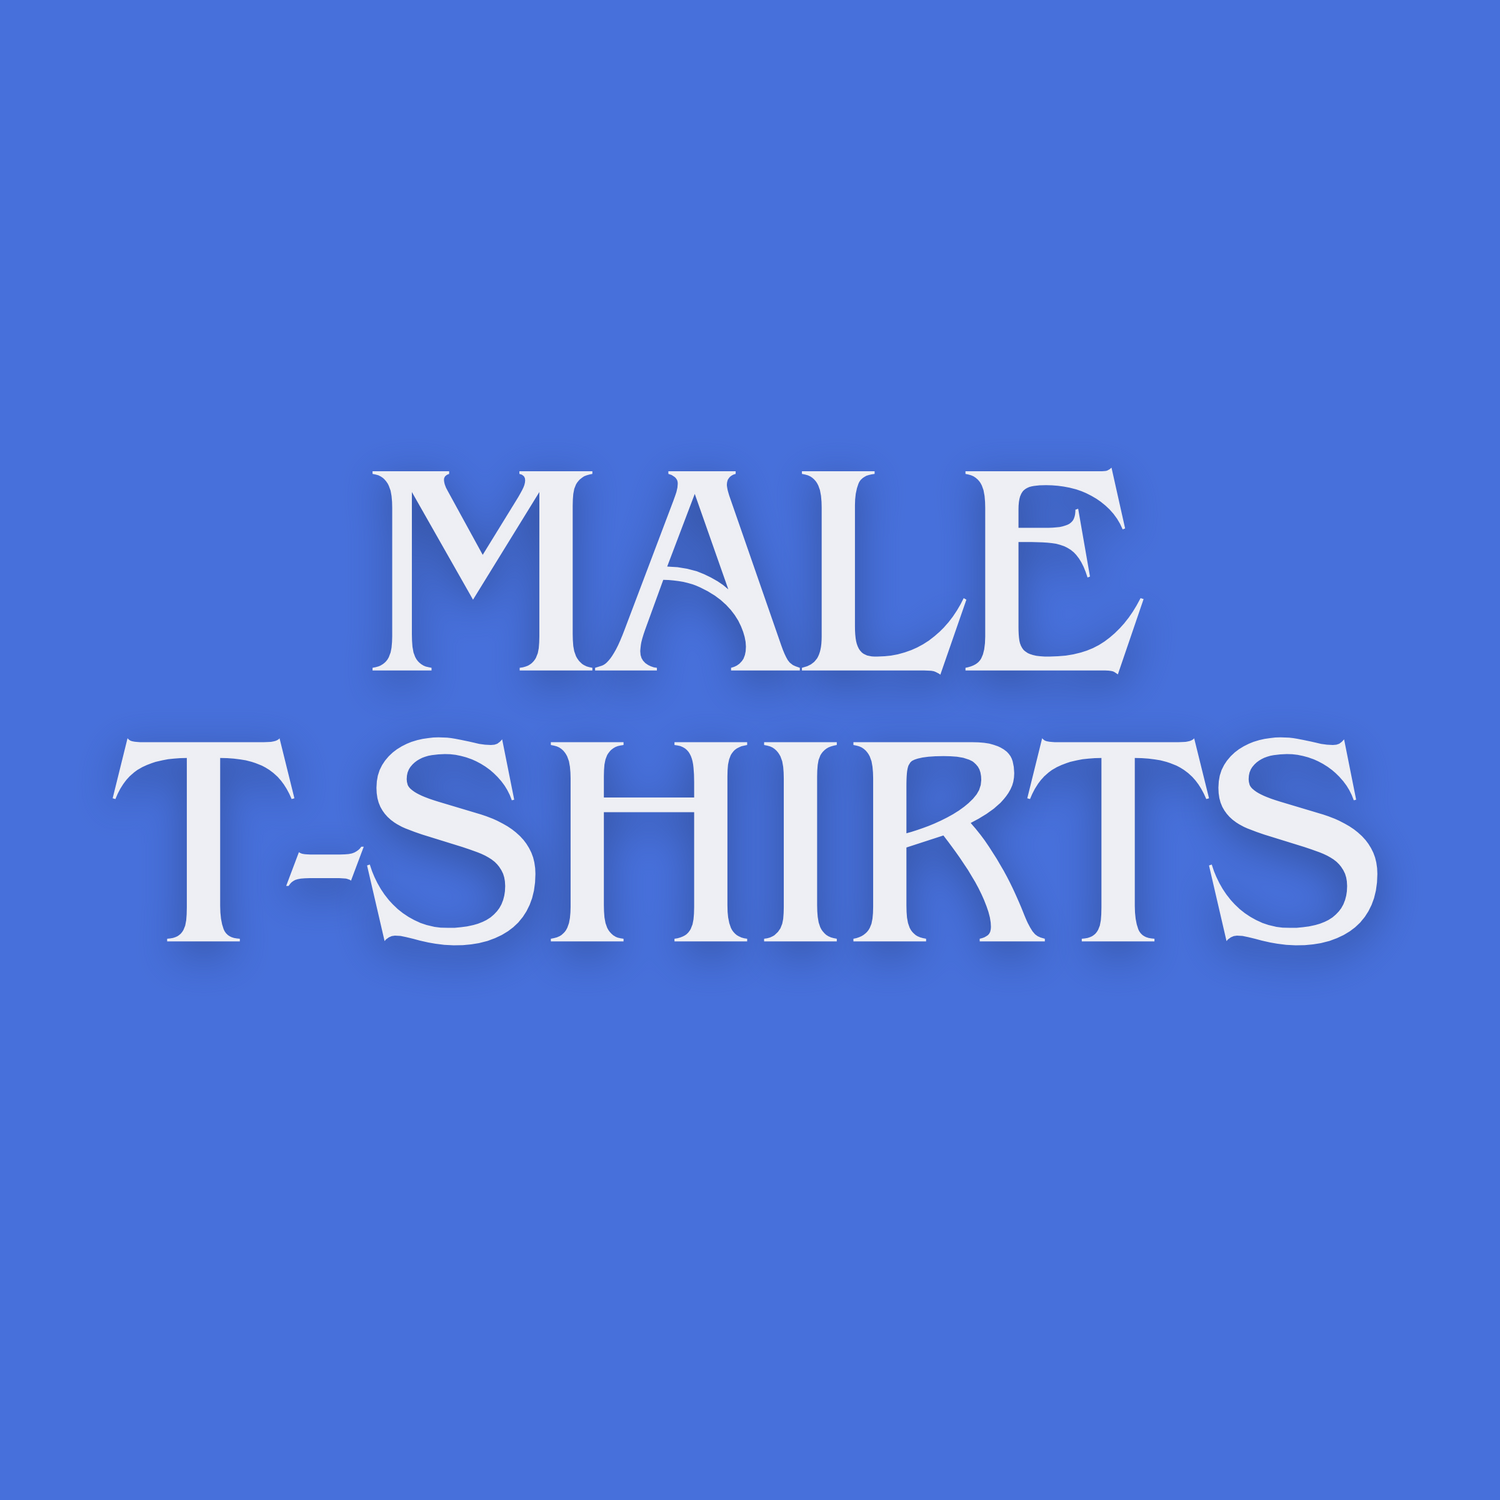 Male t-shirts